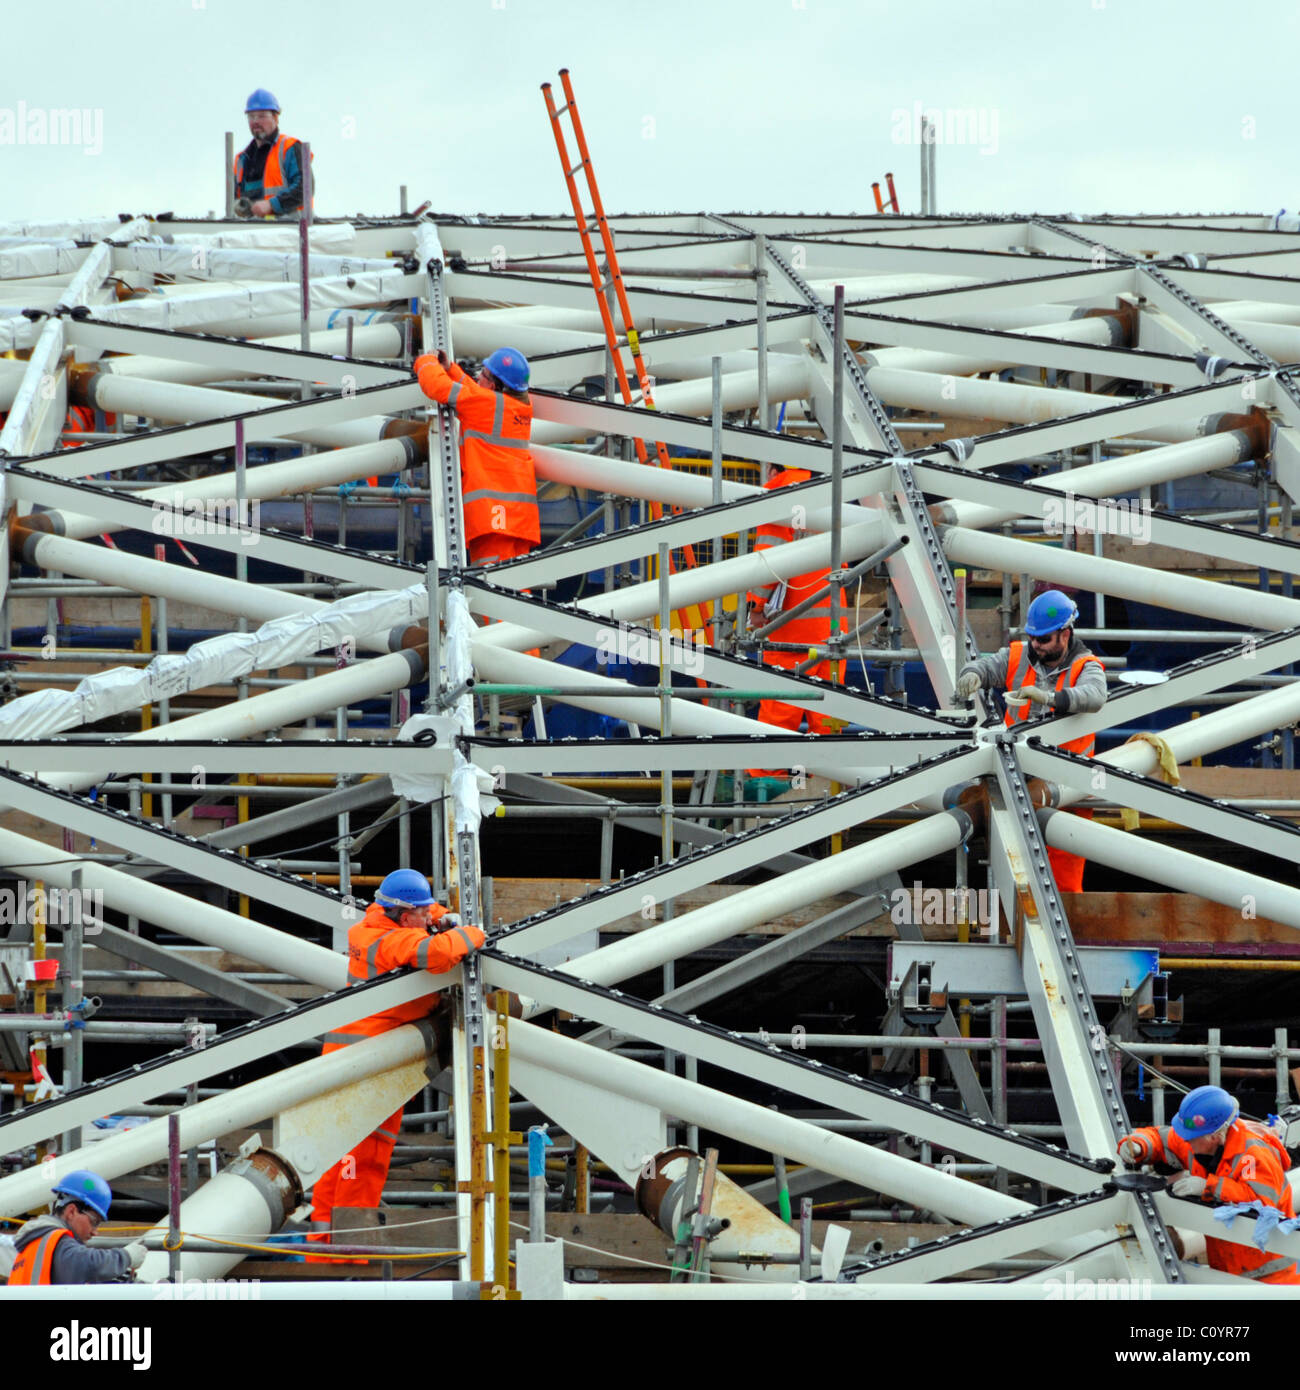 Une équipe de ouvriers de chantier de construction veste haute visibilité Casques de chantier sur le nouveau toit à une partie de Kings Station de métro London Angleterre Royaume-Uni Banque D'Images